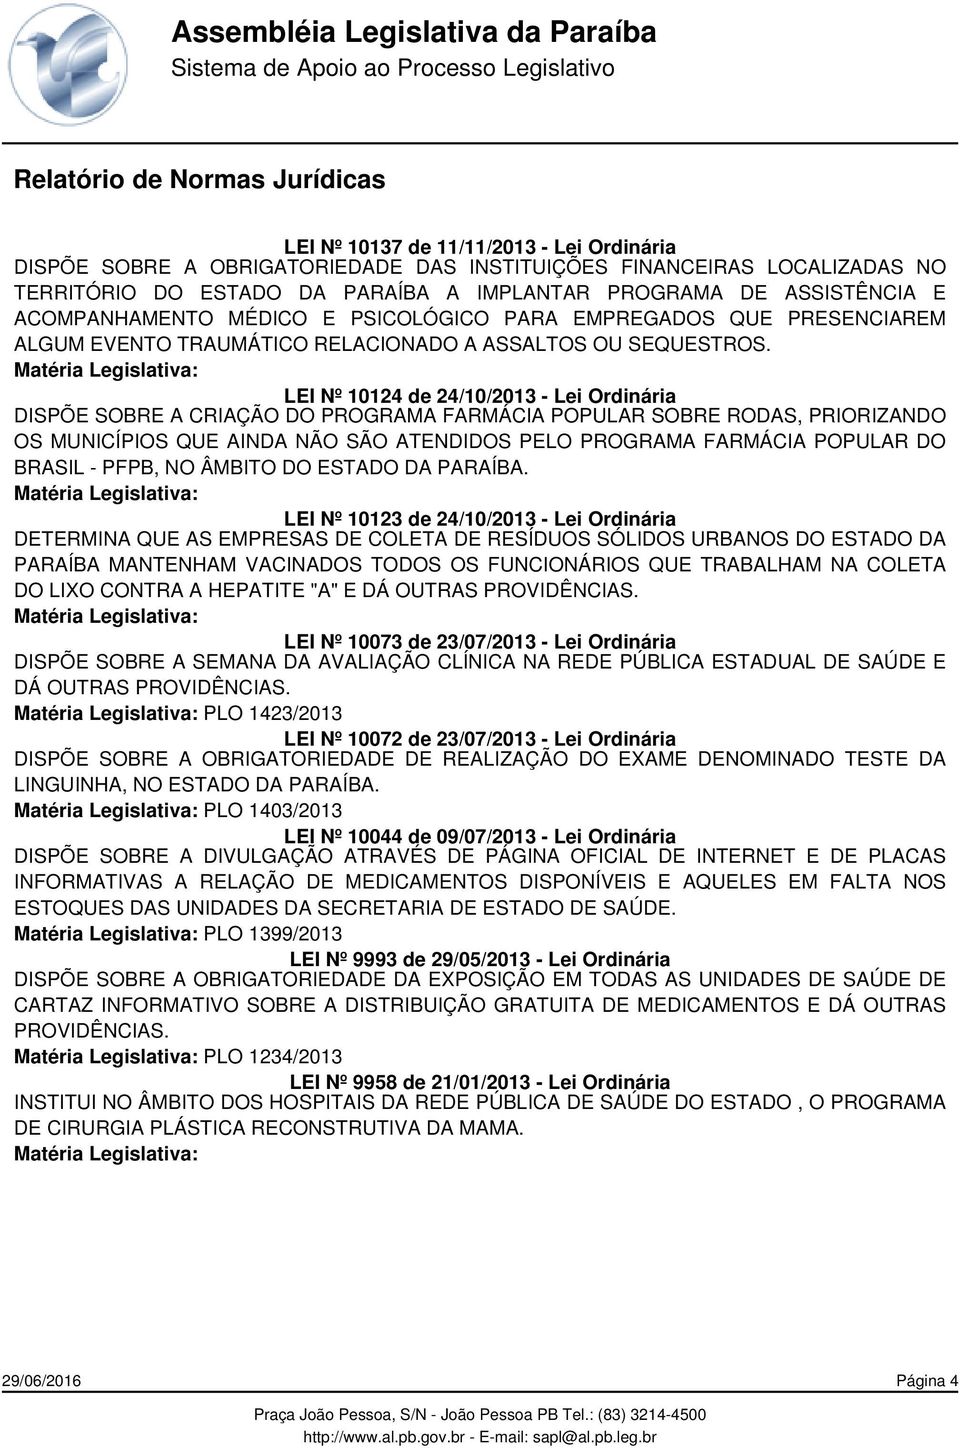 LEI Nº 10124 de 24/10/2013 - Lei Ordinária DISPÕE SOBRE A CRIAÇÃO DO PROGRAMA FARMÁCIA POPULAR SOBRE RODAS, PRIORIZANDO OS MUNICÍPIOS QUE AINDA NÃO SÃO ATENDIDOS PELO PROGRAMA FARMÁCIA POPULAR DO